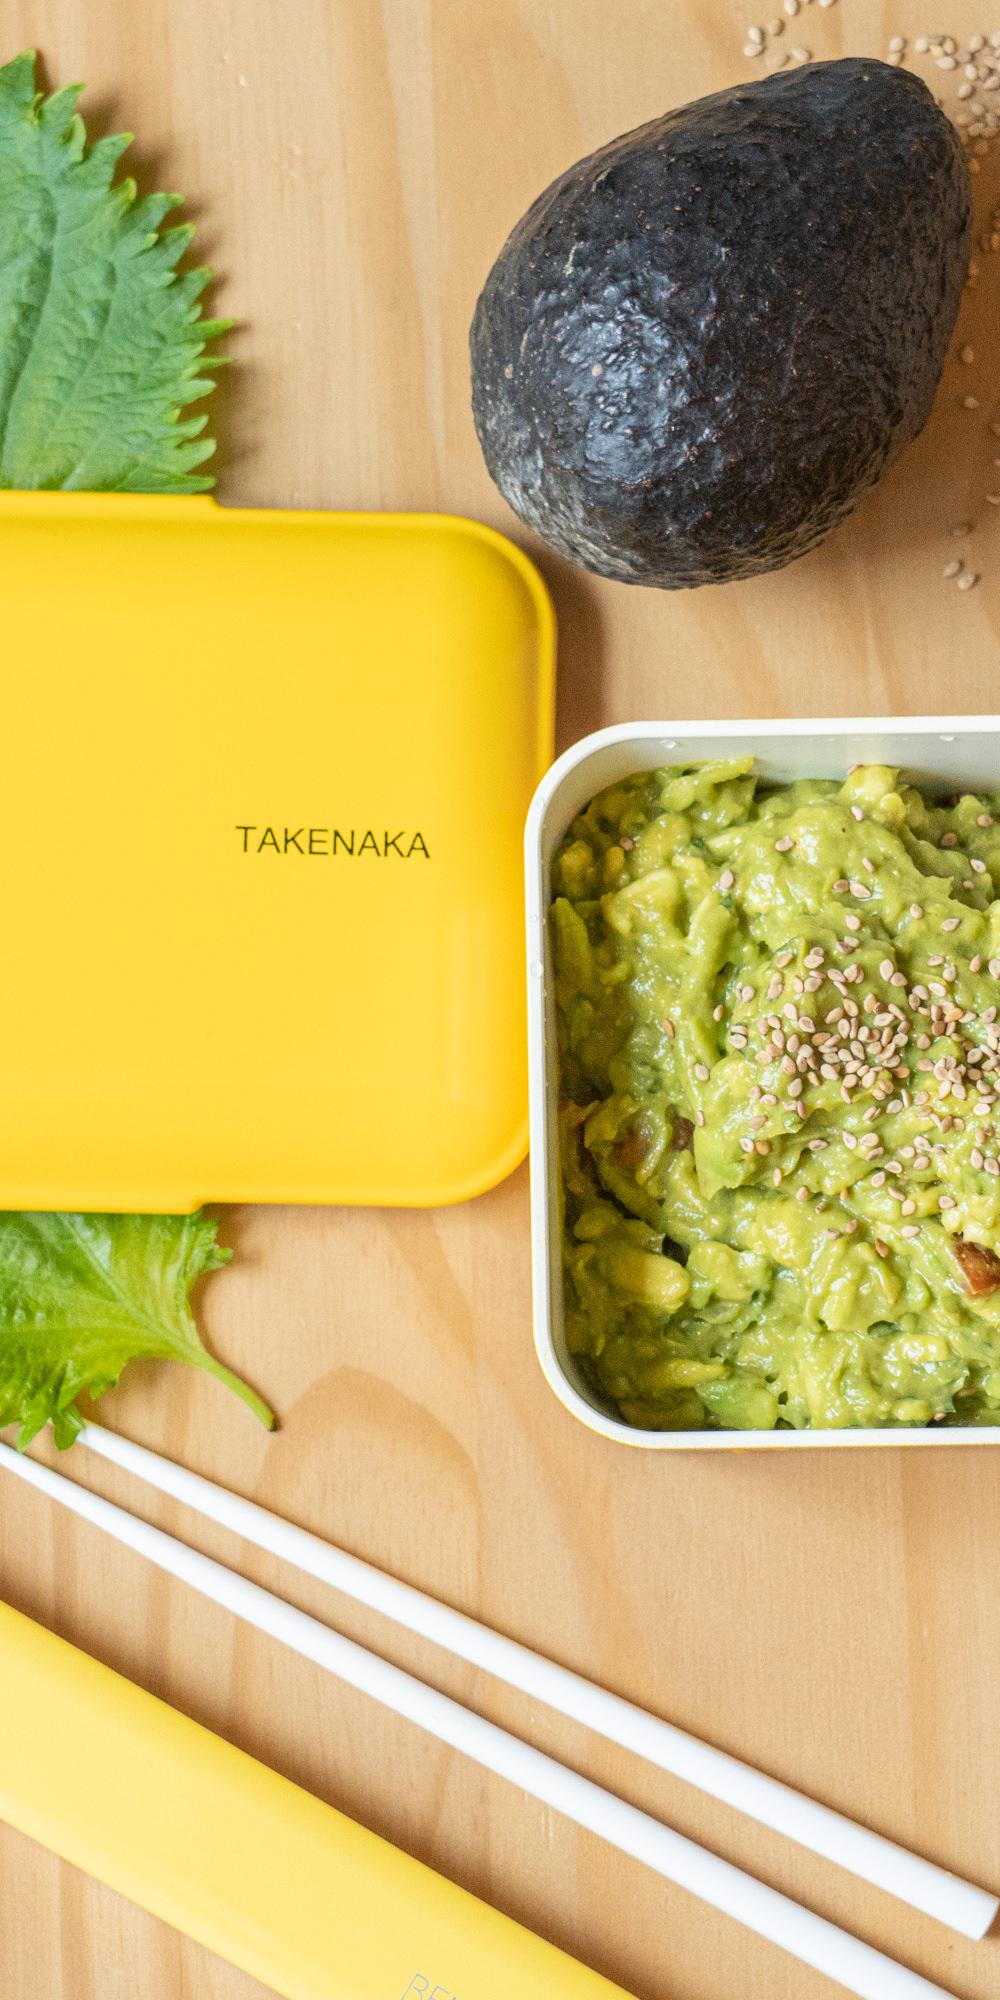 TAKENAKA bento bite dual from takenaka, eco-friendly and sustainable  japanese style bento lunch box (lemon